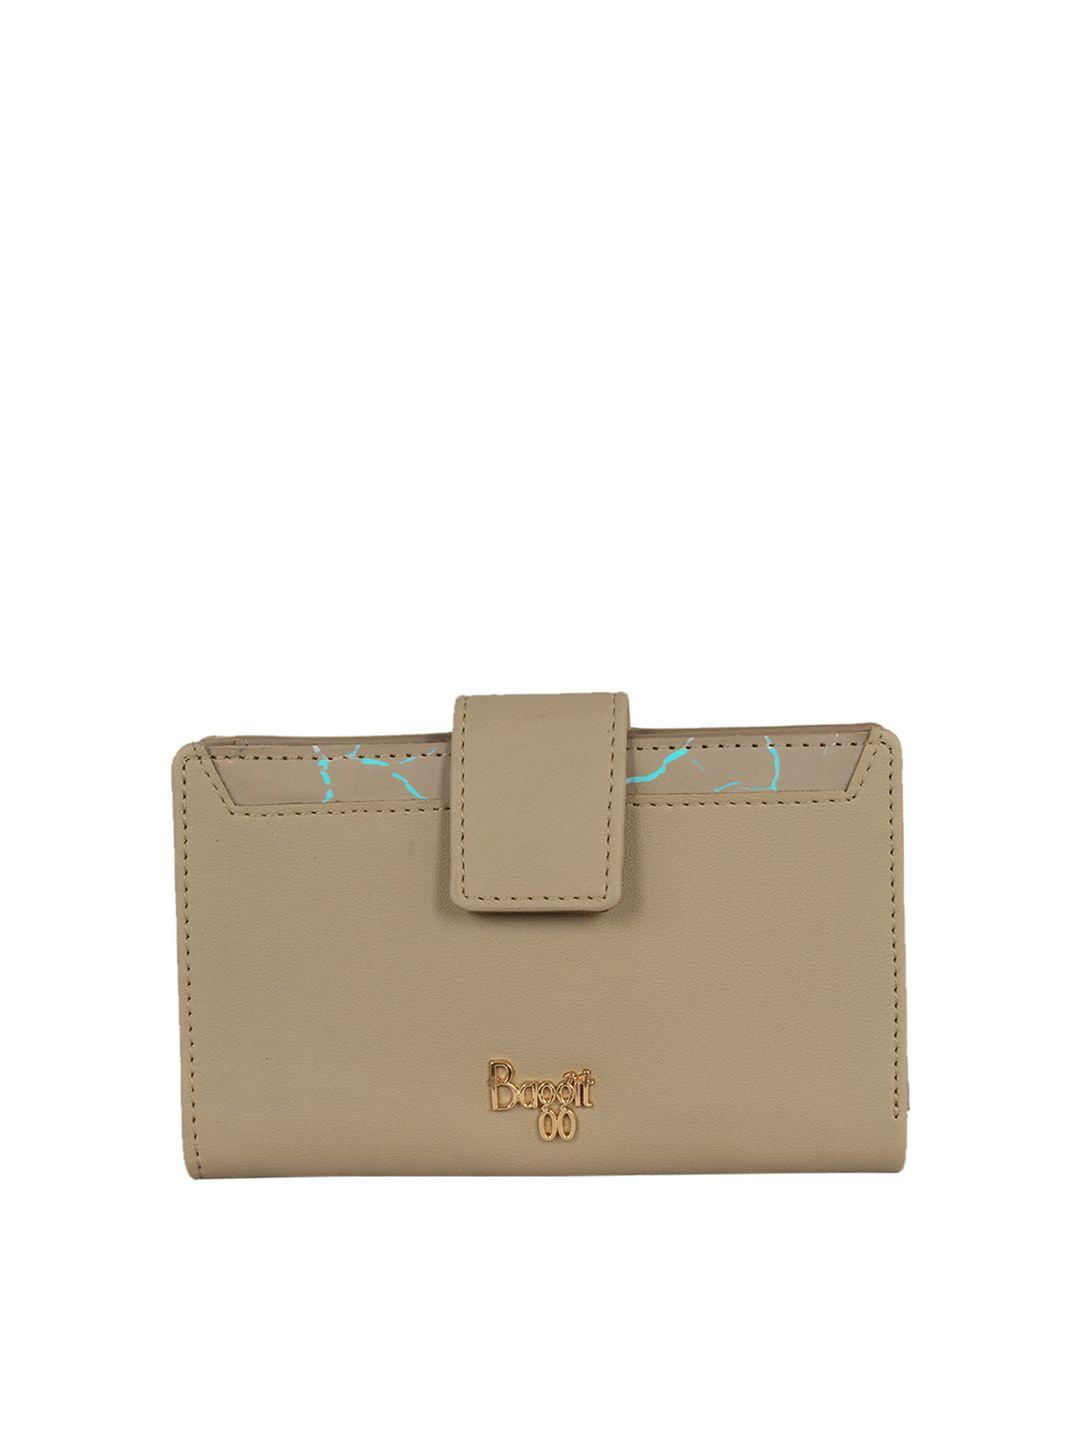 baggit women beige textured two fold wallet